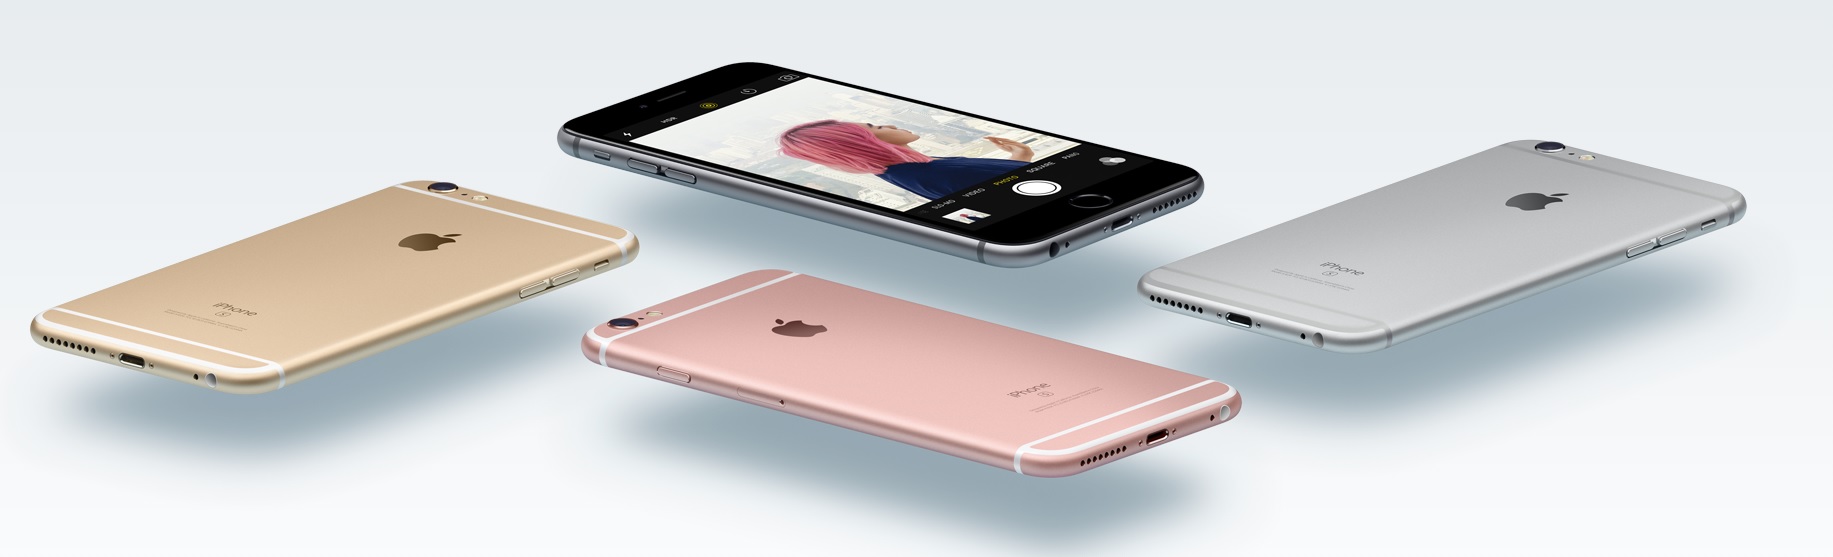 Det ryktes igjen at Apple ikke kommer til å endre designet nevneverdig med iPhone 7, men tilføre den bedre ytelse, kamera og Smart Connector.